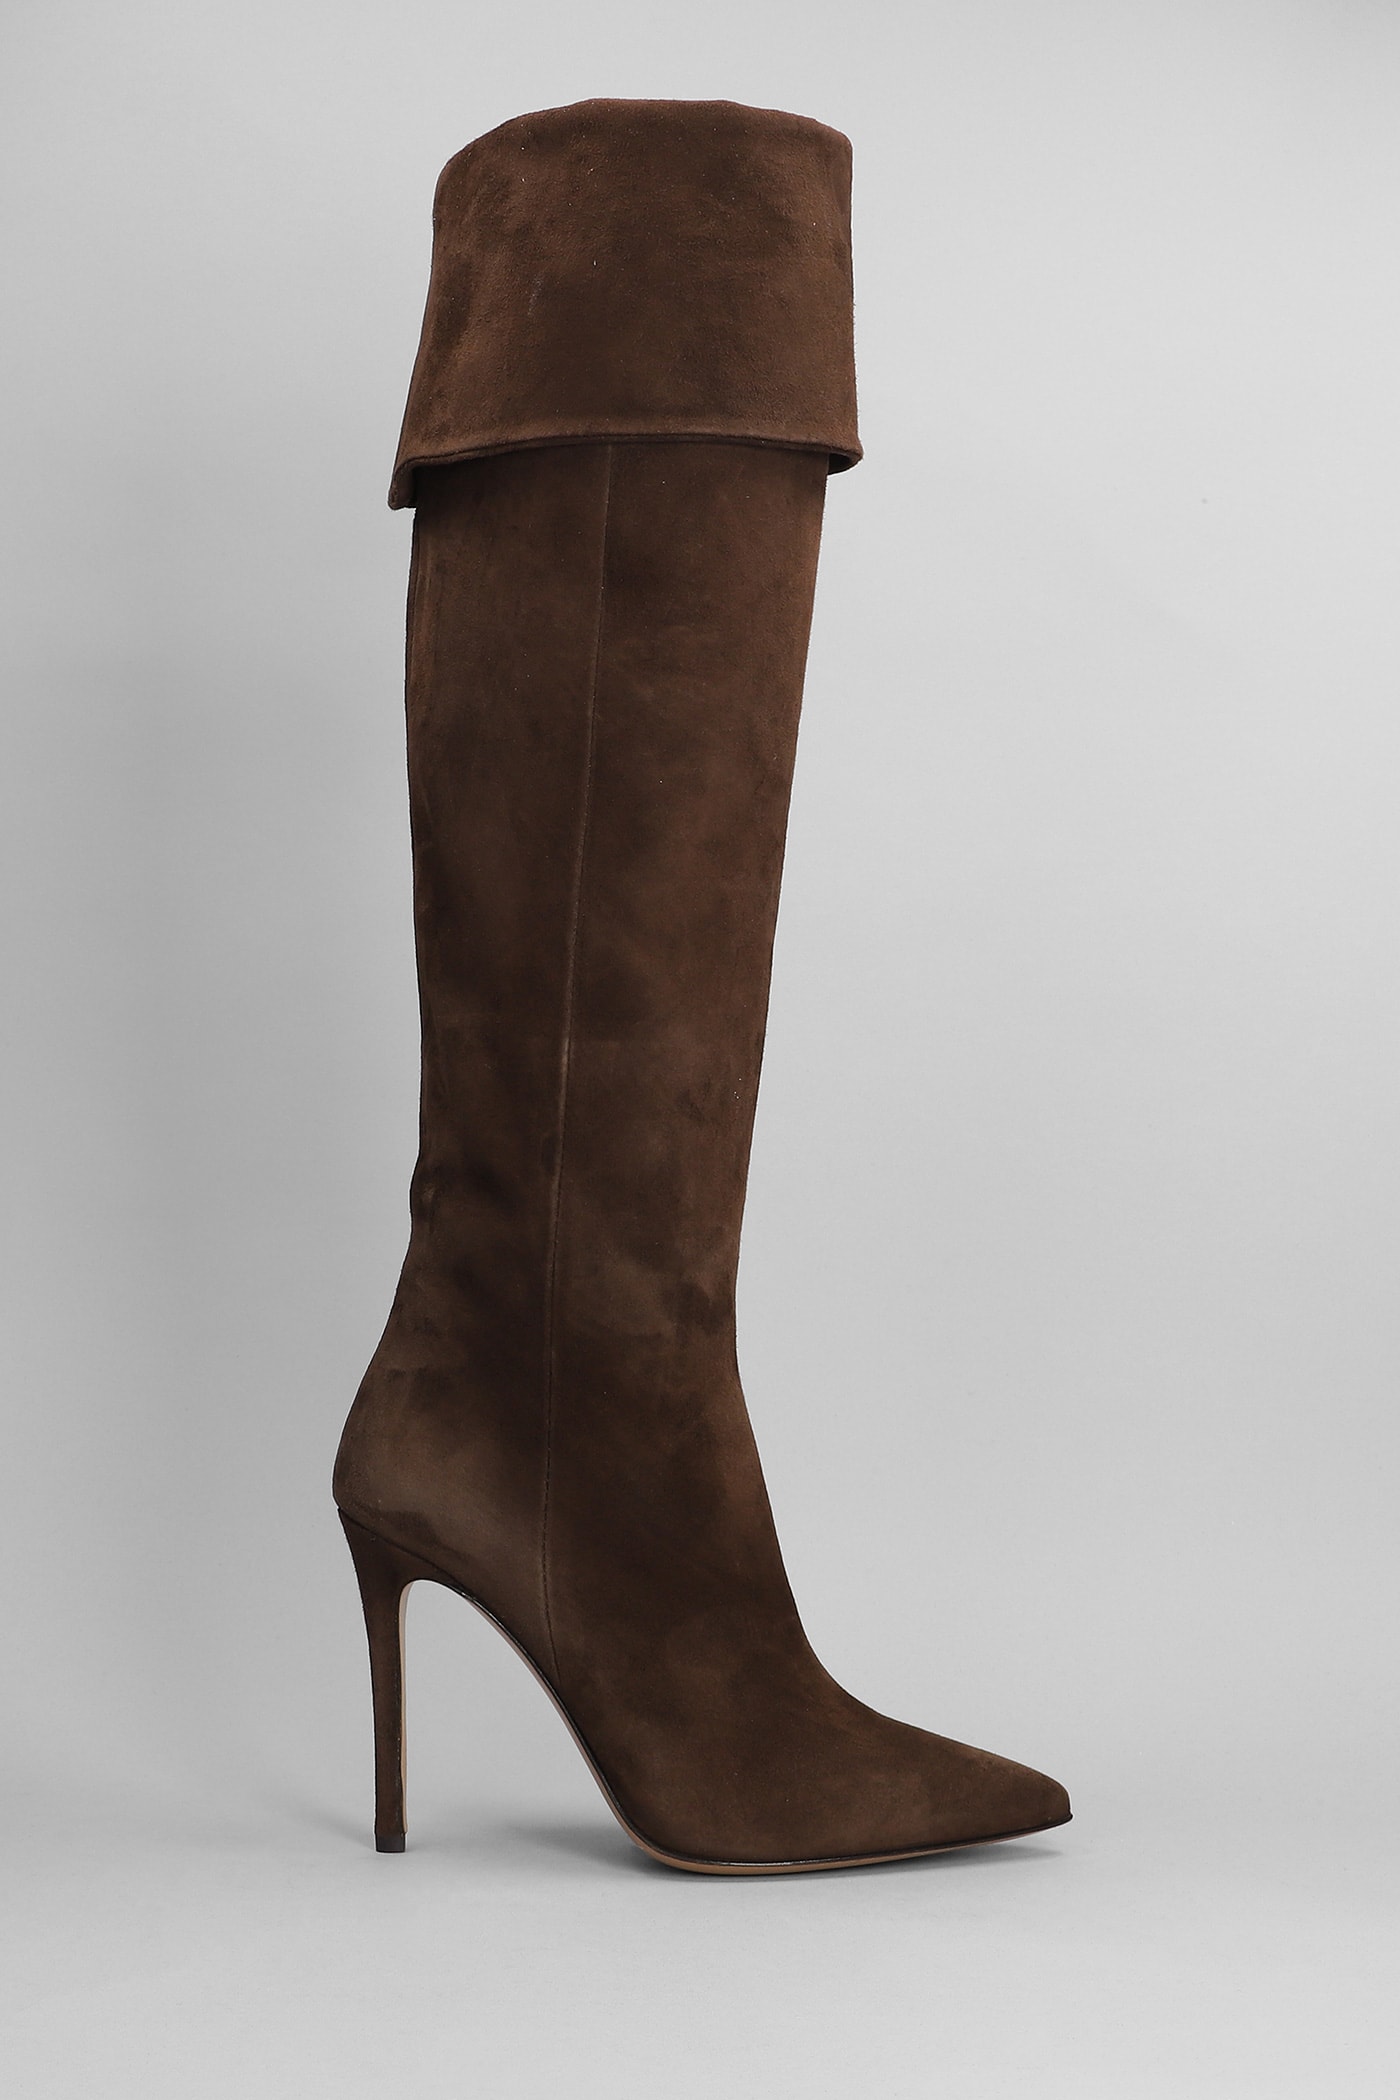 High Heels Boots In Dark Brown Suede